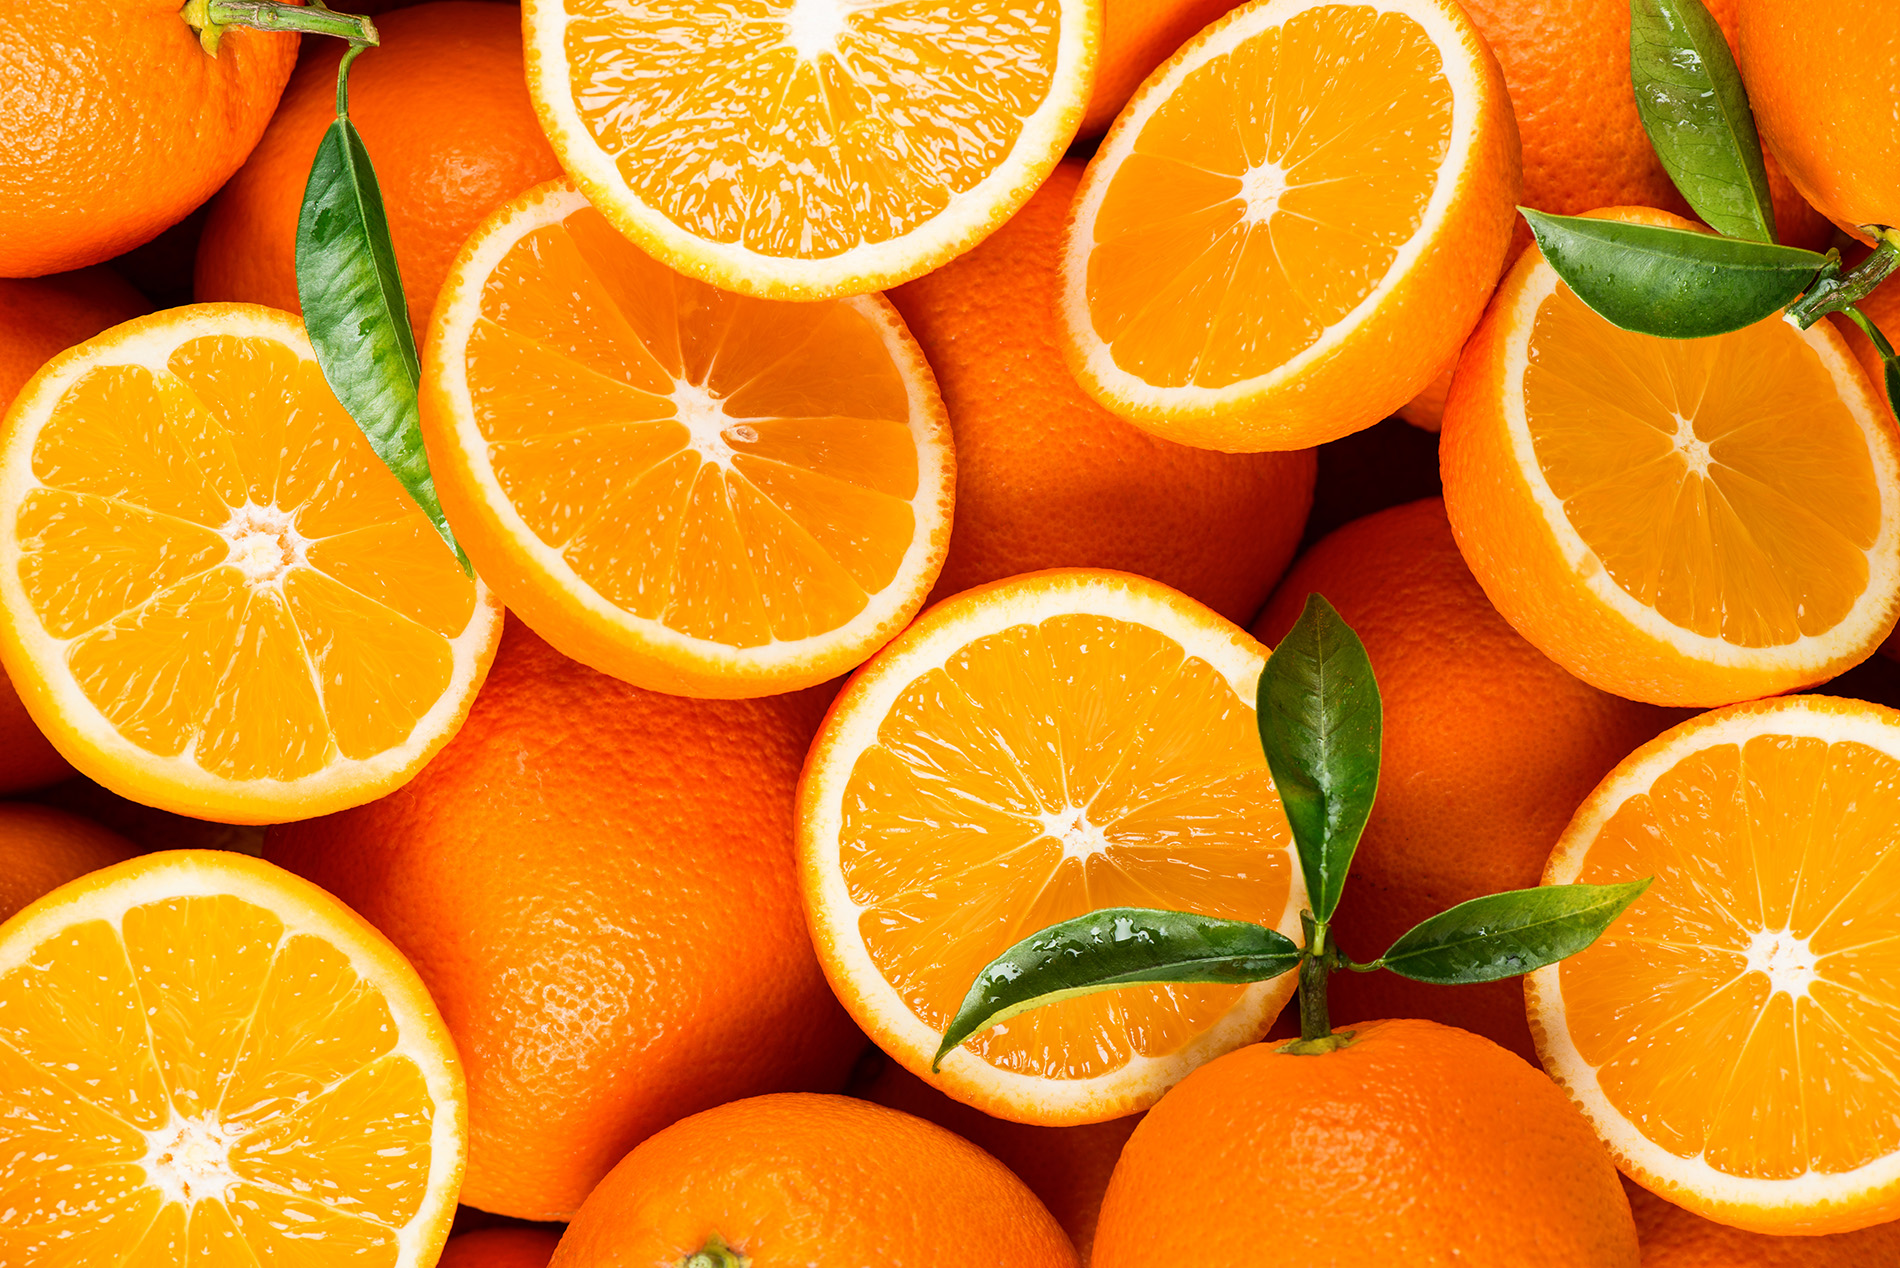 Display of oranges